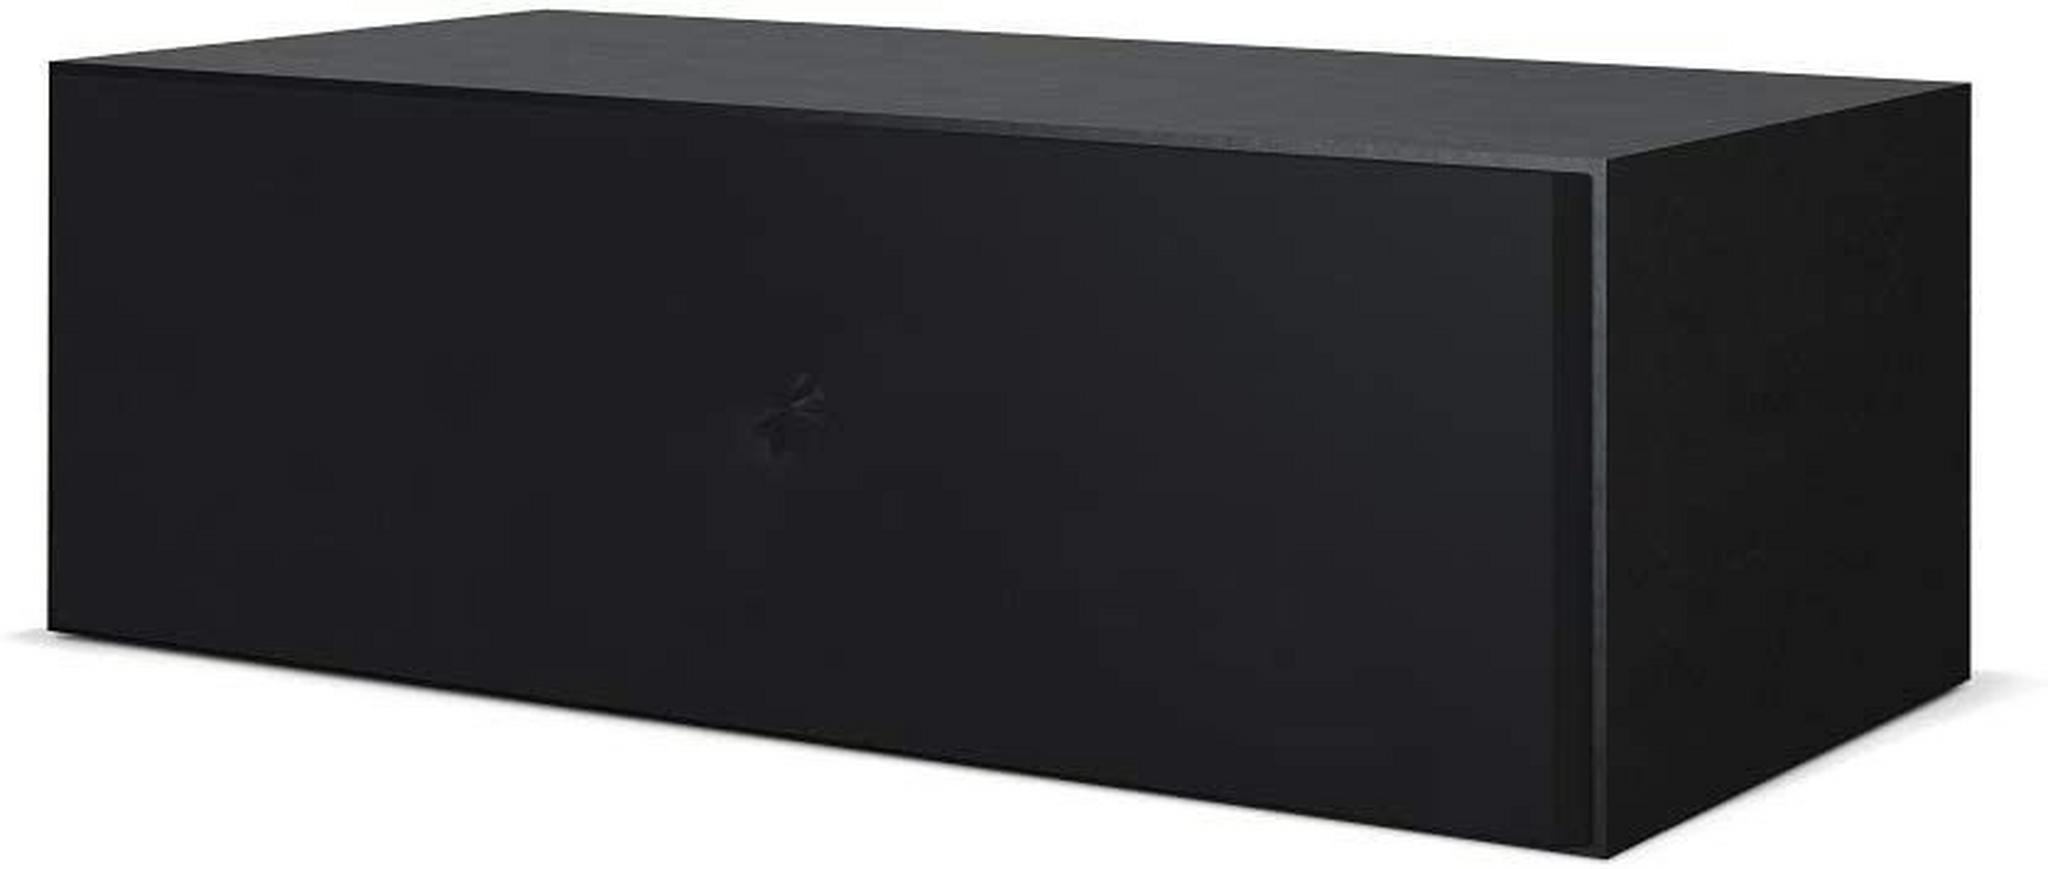 مكبر الصوت متوسط القناة كيو ٦٥٠ سي من كيف - أسود